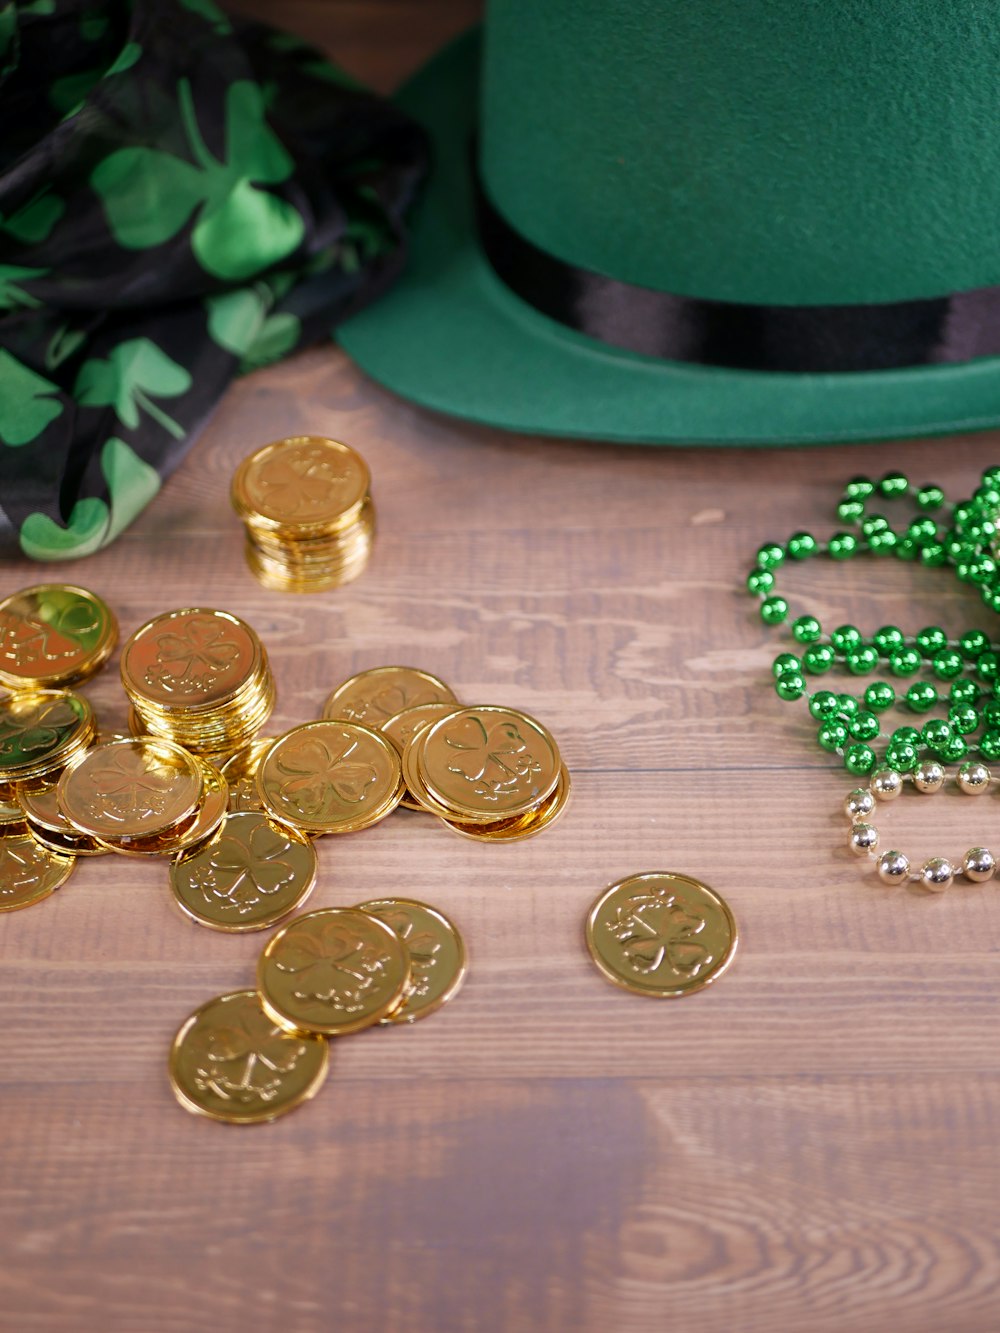 テーブルの上の緑の帽子といくつかの金貨